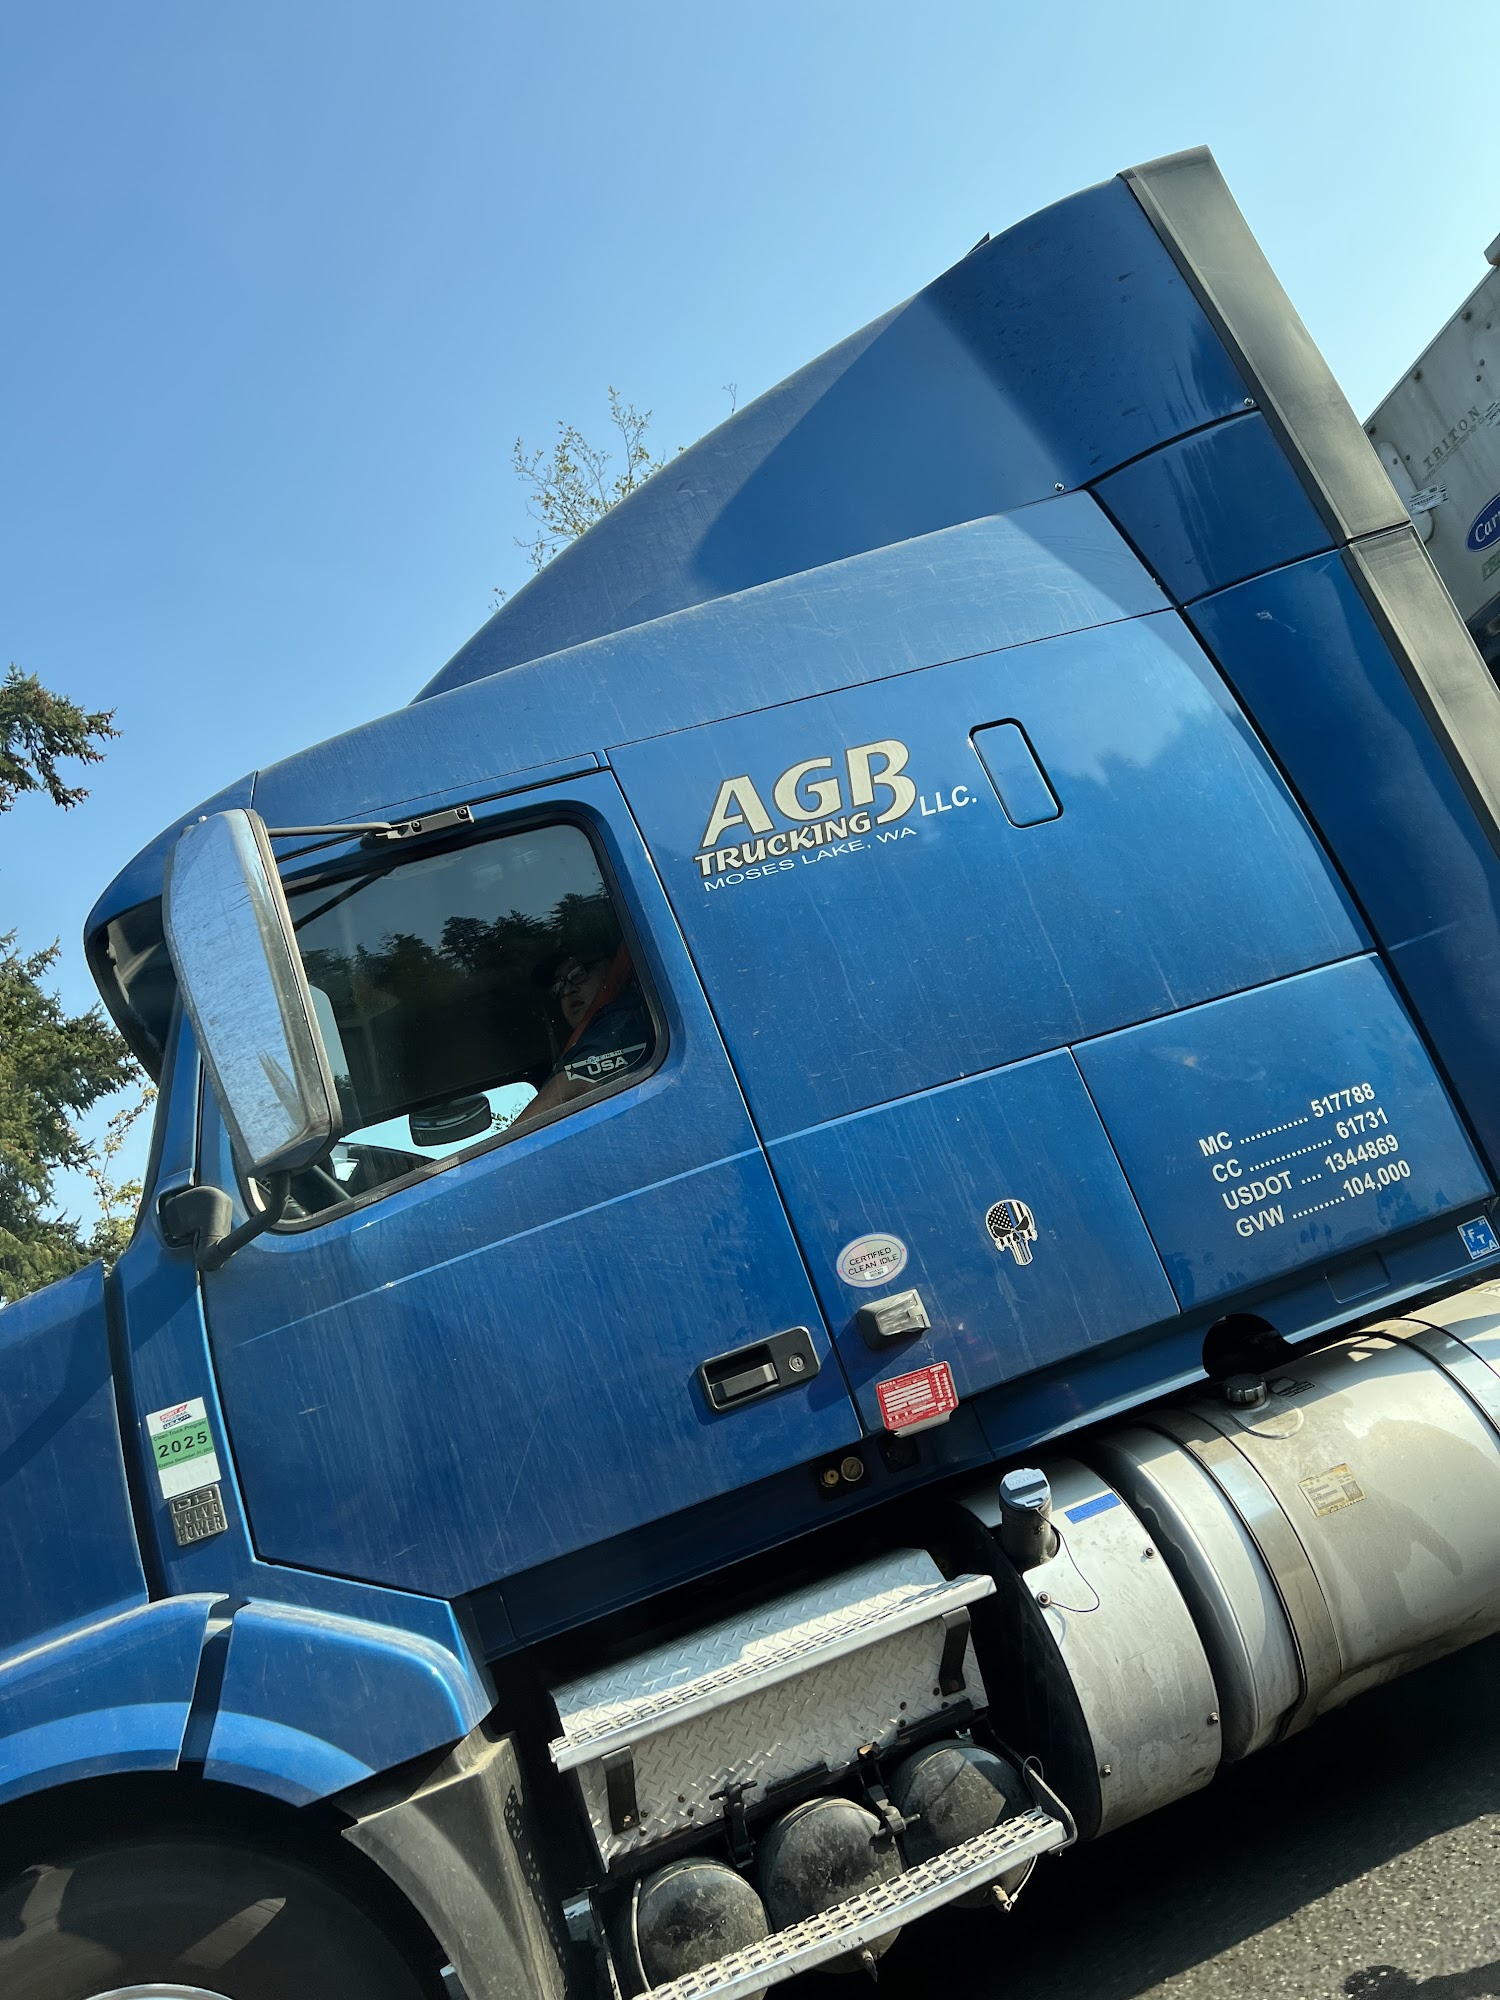 AGB Trucking LLC 1844 W Lee Rd, Othello Washington 99344